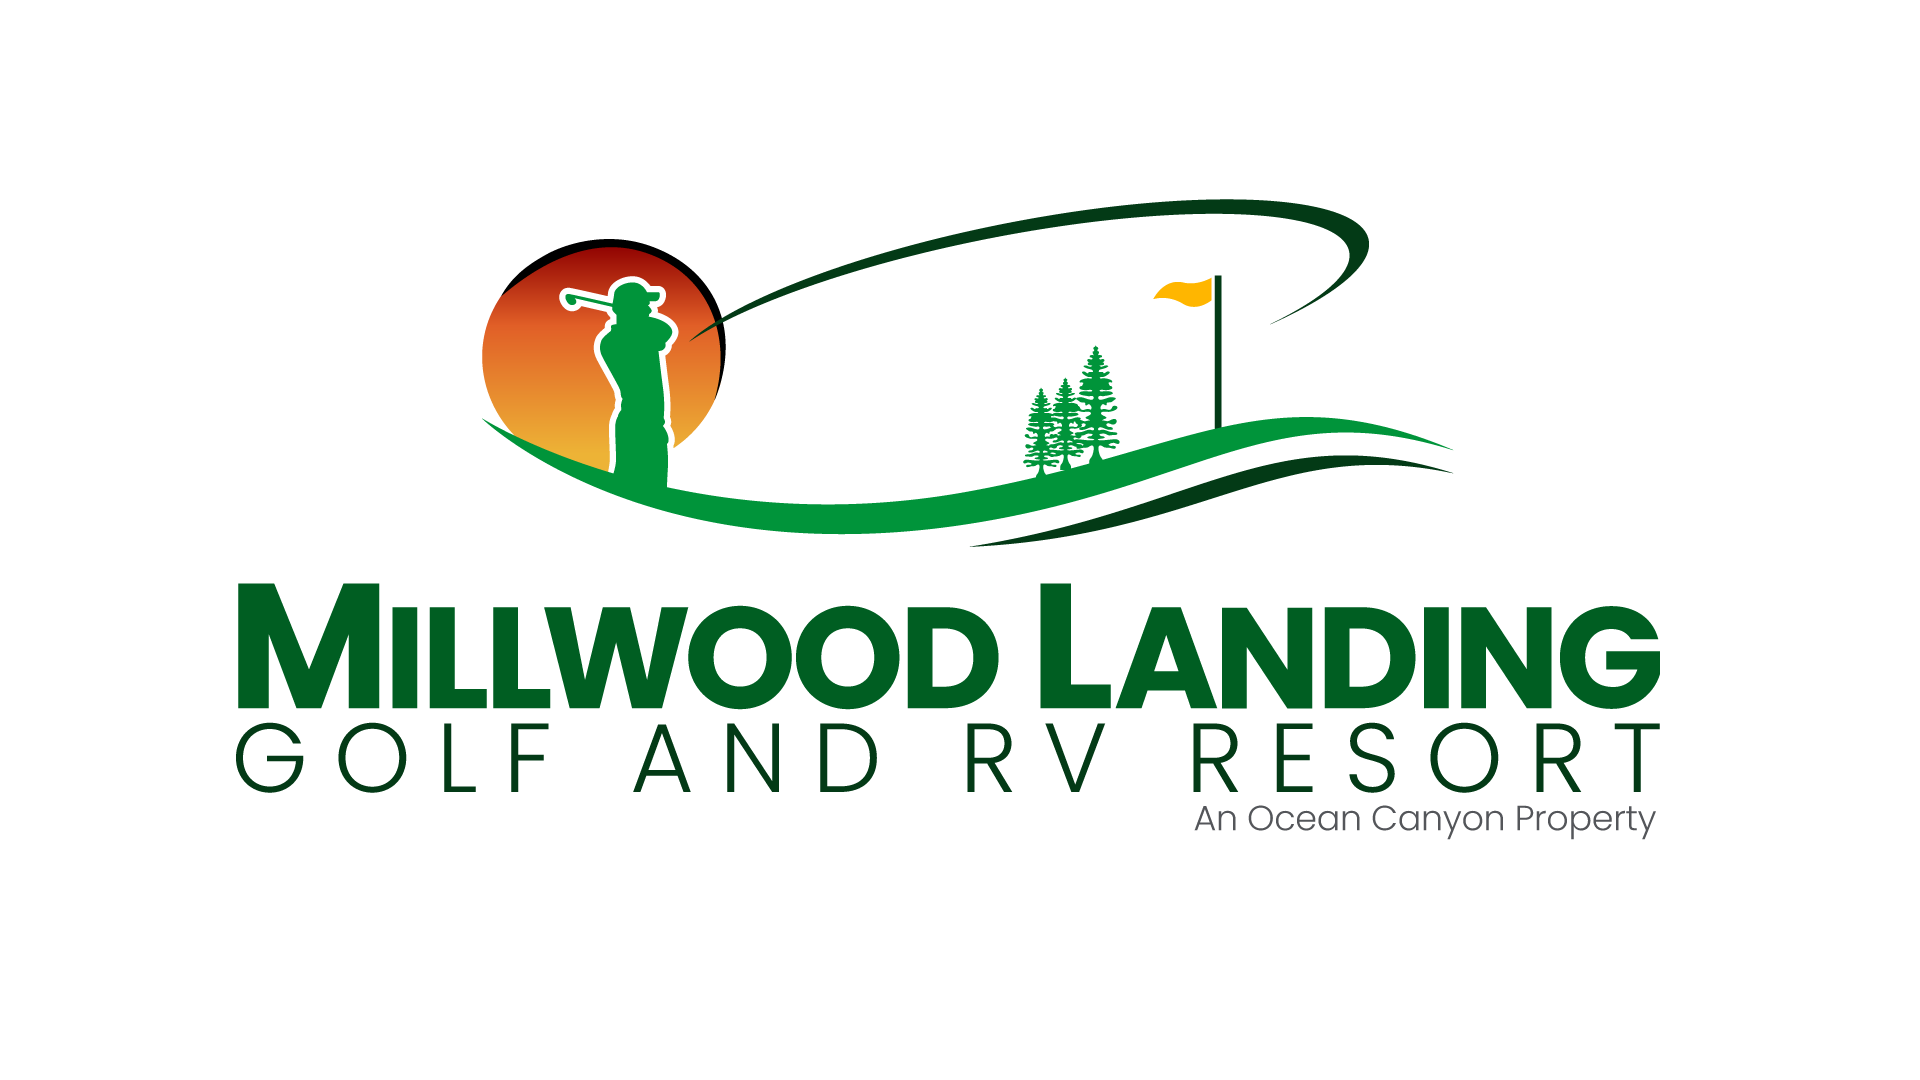 Millwood Landing RV Resort